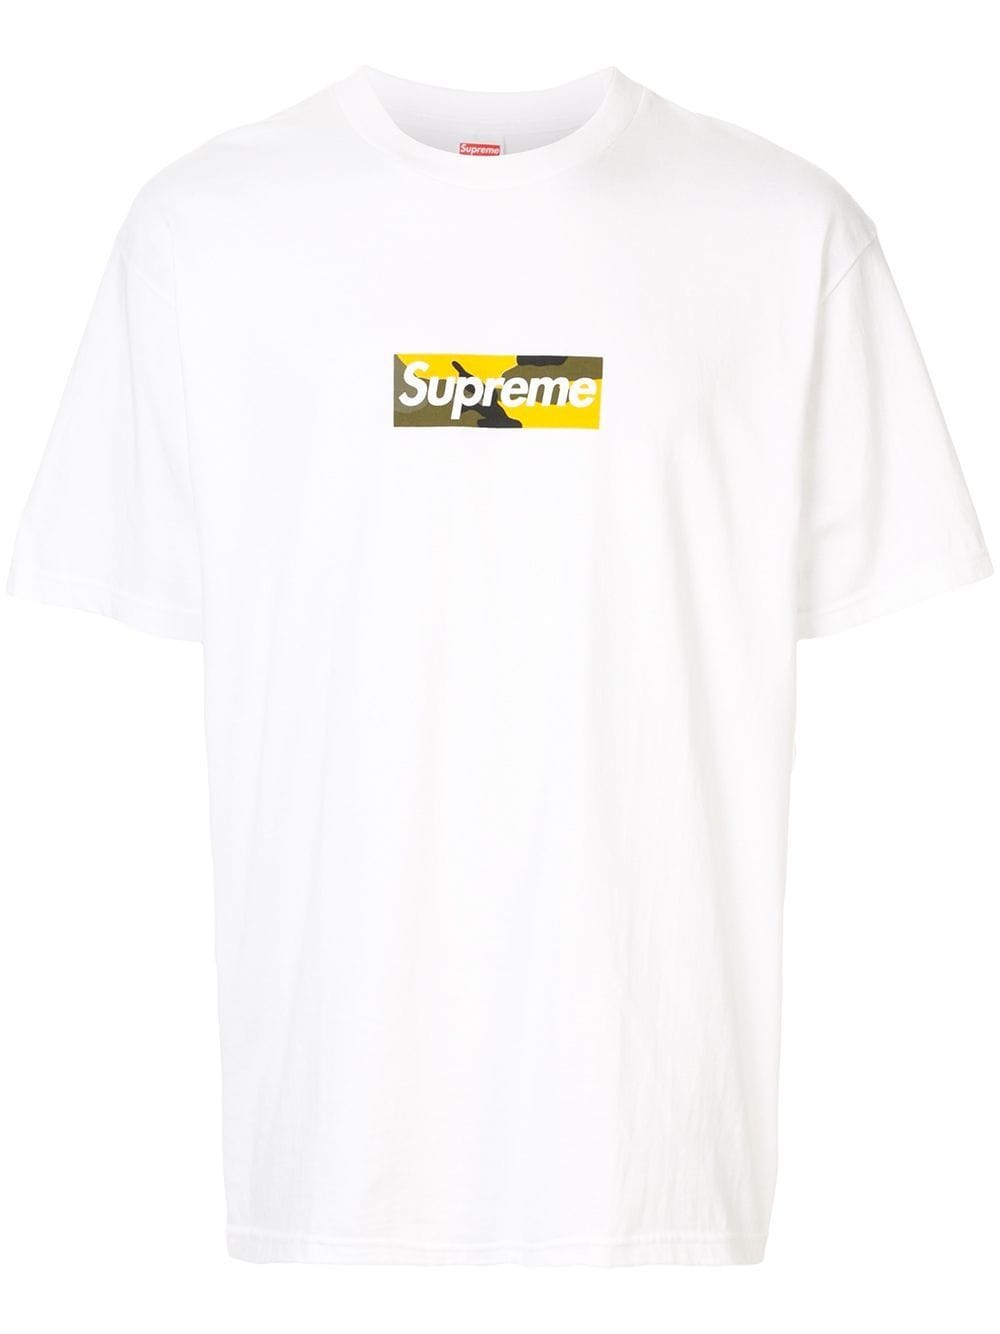 Supreme Black T-Shirts for Men for sale